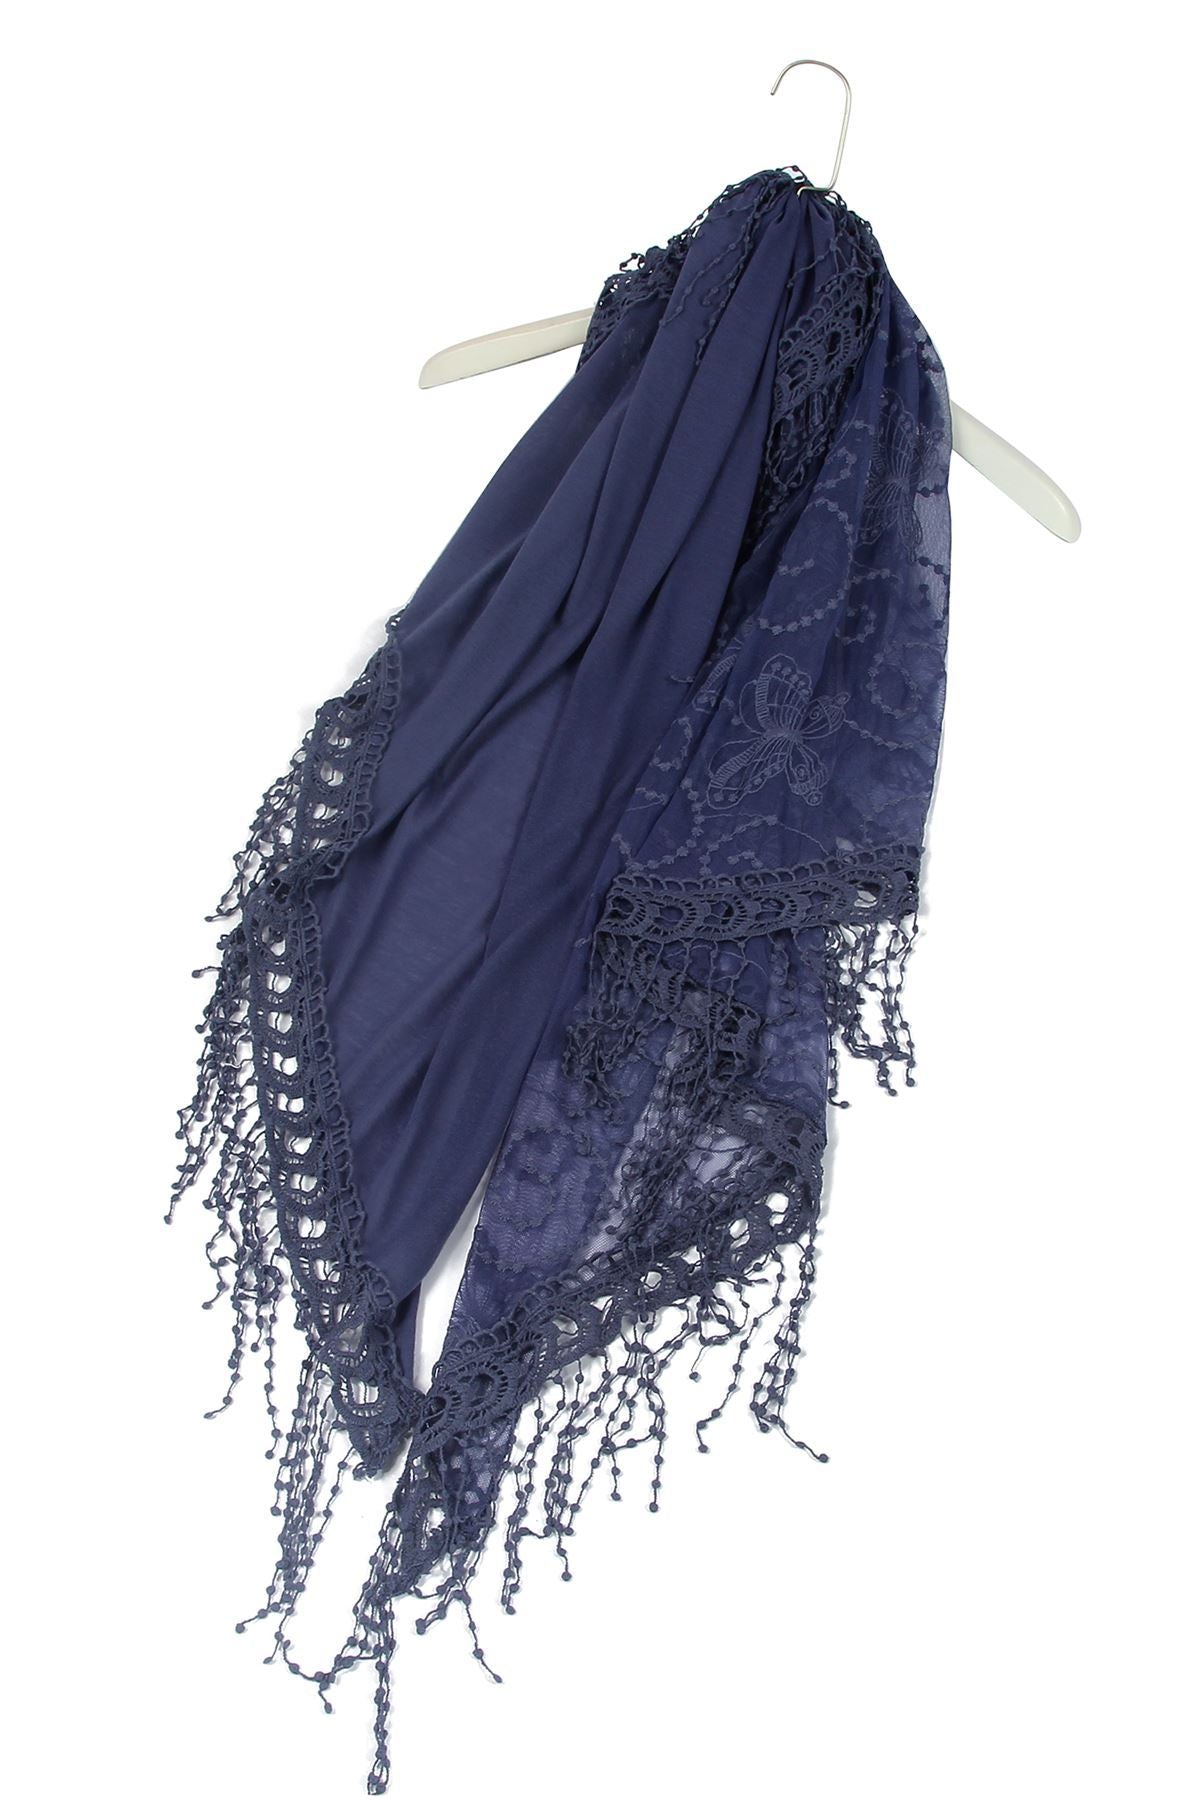 Bavlněná lichoběžníková Šála-šátek, 80 cm x 198 cm x 70 cm, Motýlí a krajkový vzor, Džínová | -80% Akce na Šperky